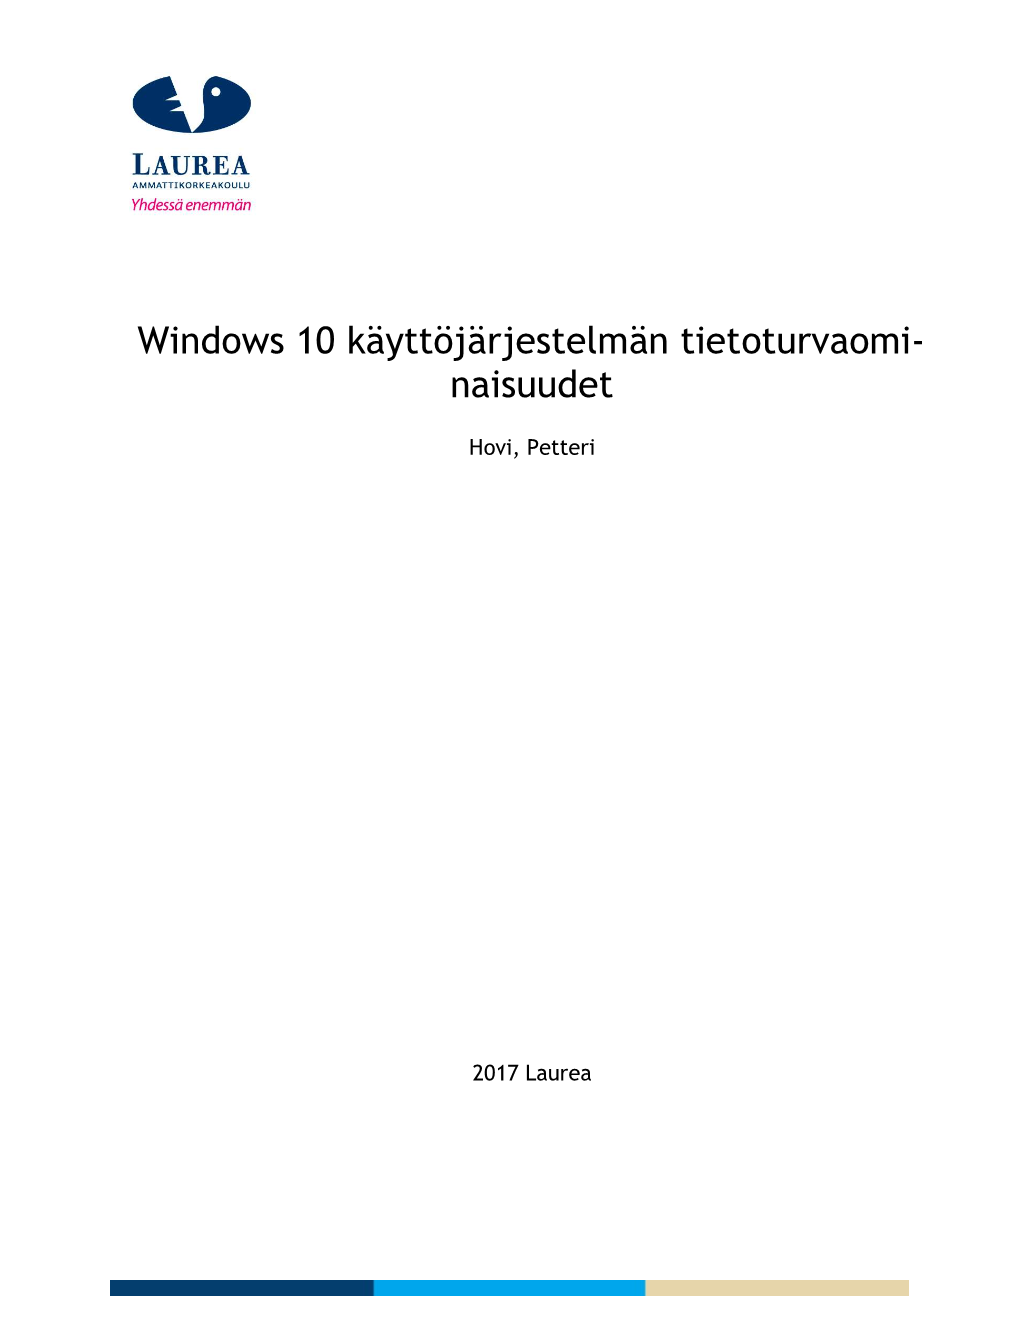 Windows 10 Käyttöjärjestelmän Tietoturvaomi- Naisuudet